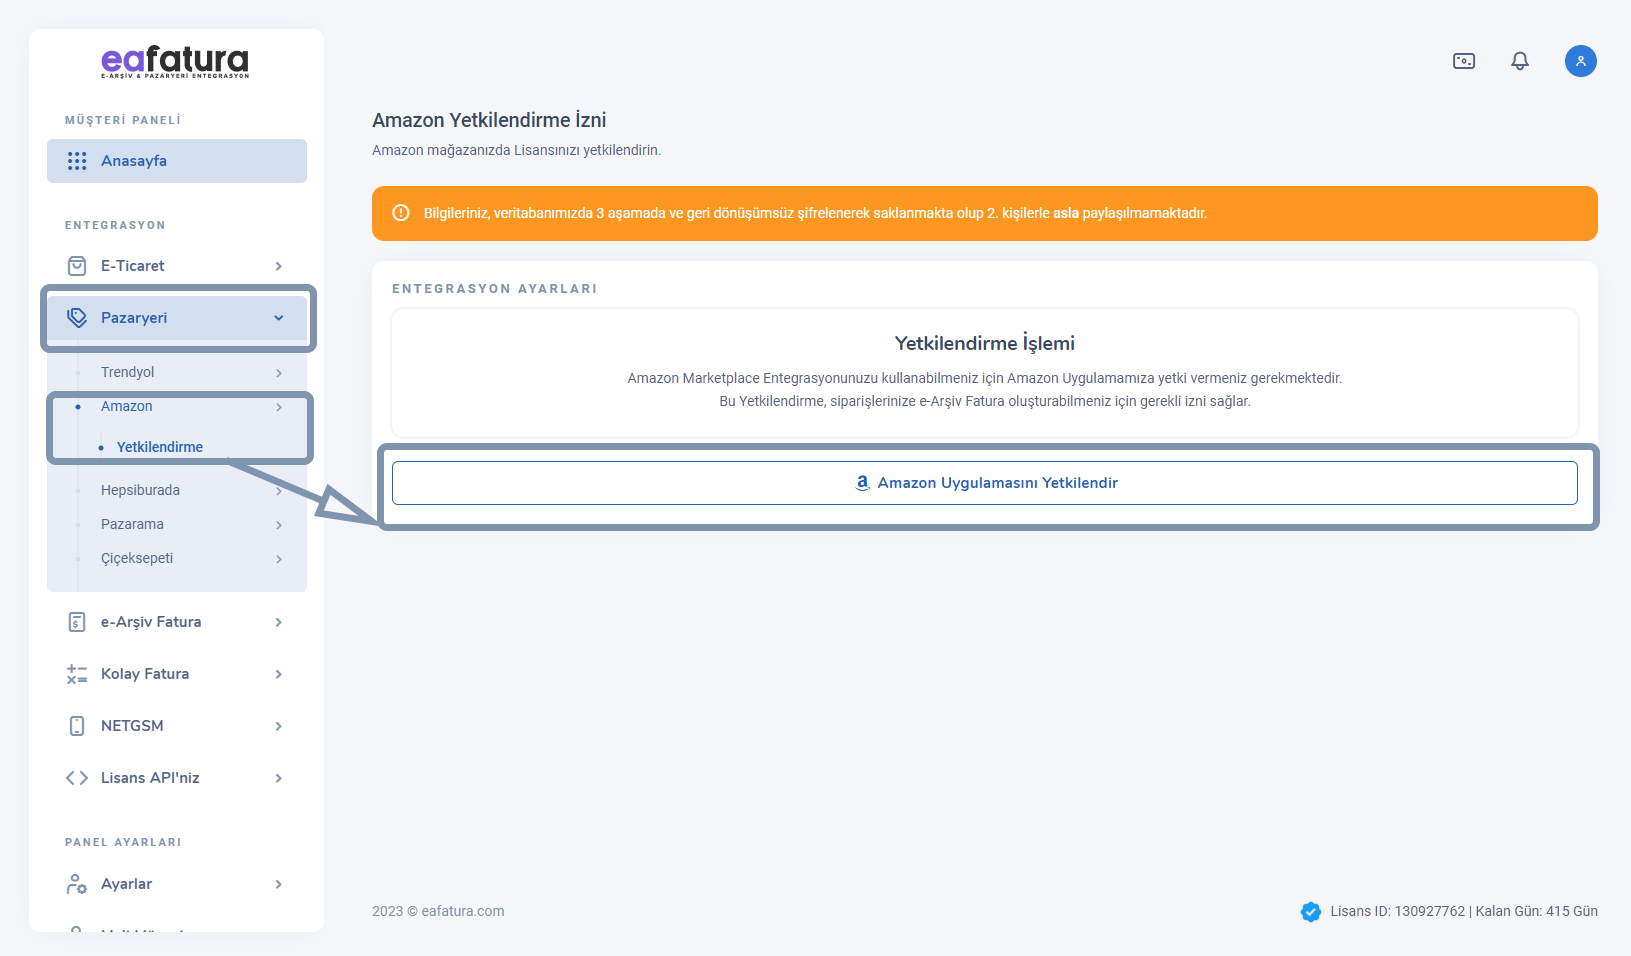 eafatura.com Amazon Marketplace e-Arşiv Fatura Entegrasyonu Uygulaması